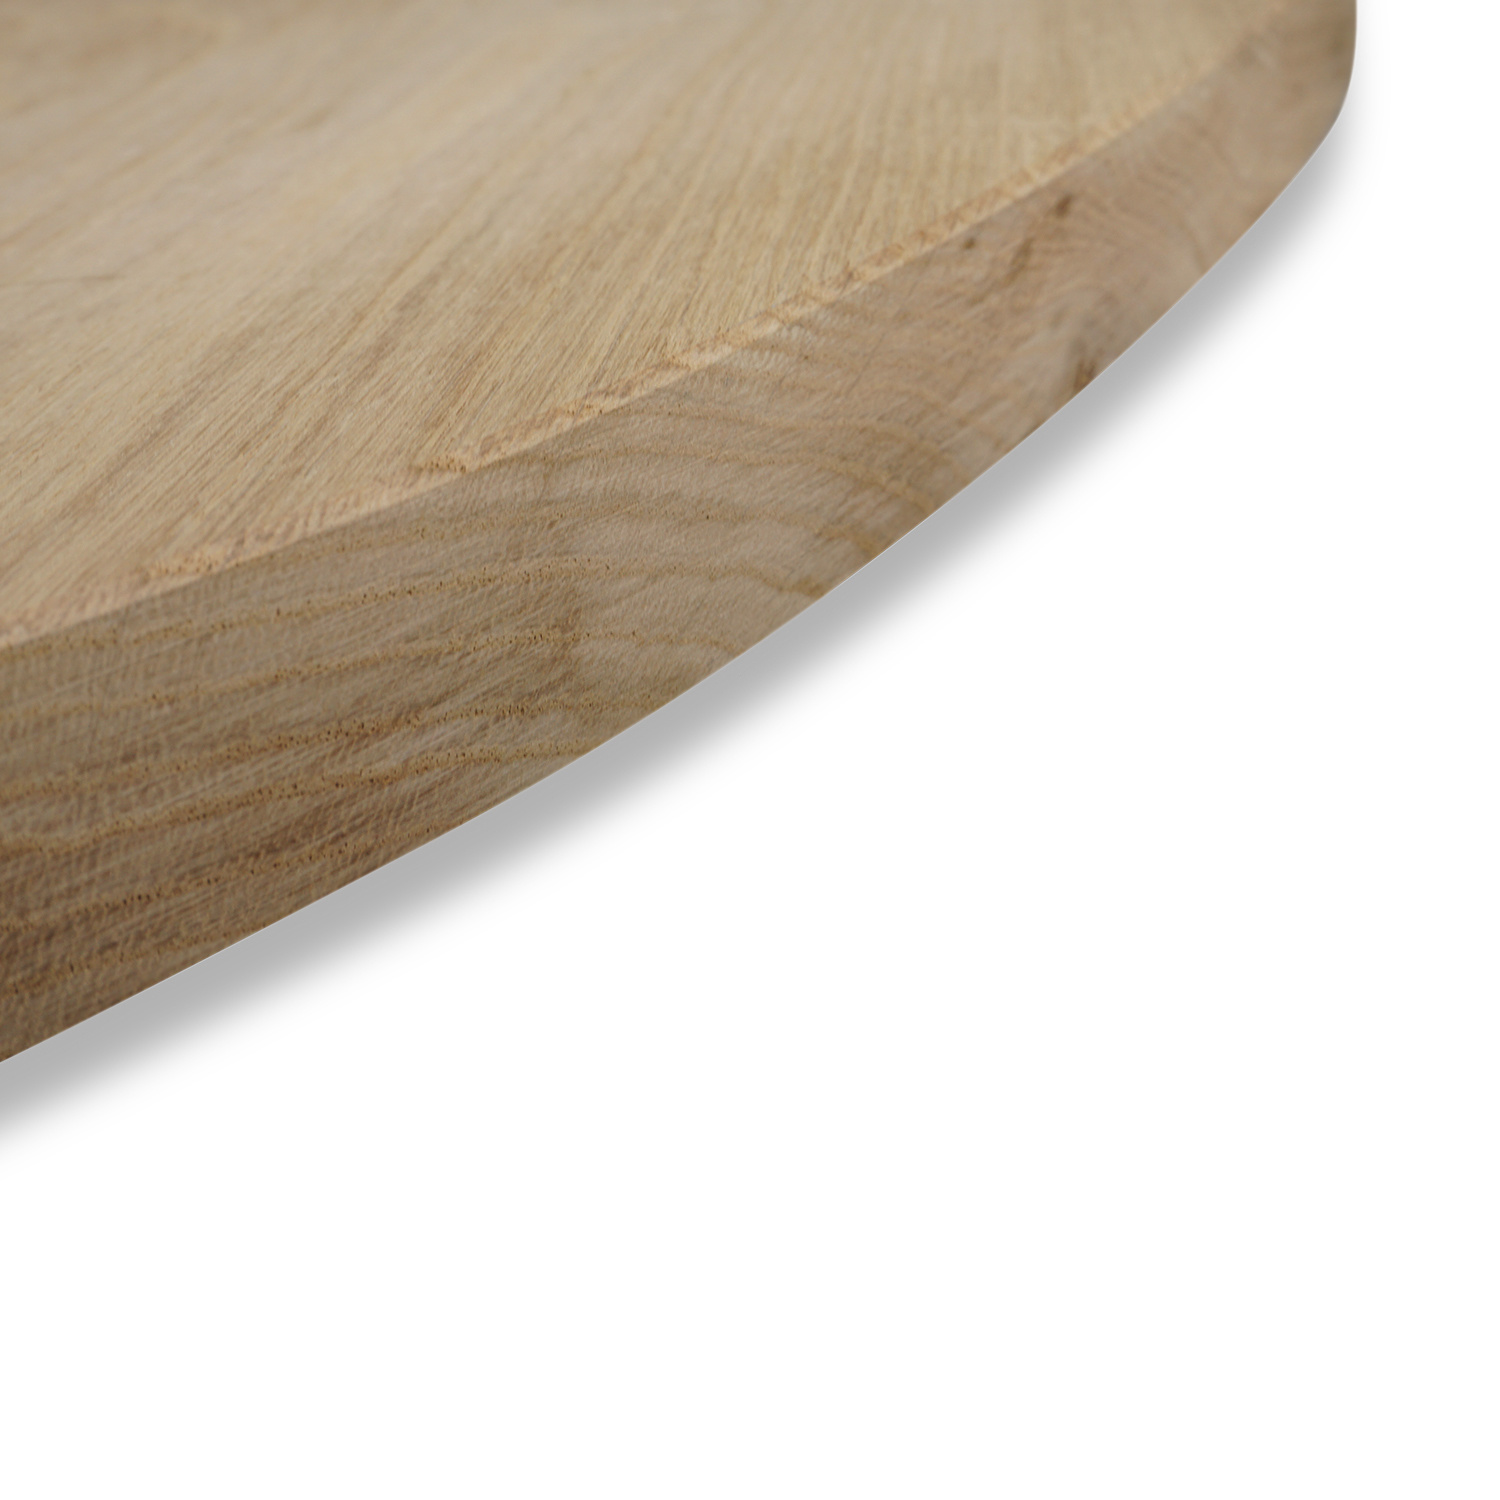  Tischplatte Eiche oval - 3 cm dick - Eichenholz A-Qualität - Ellipse Eiche Tischplatte massiv - HF 8-12%